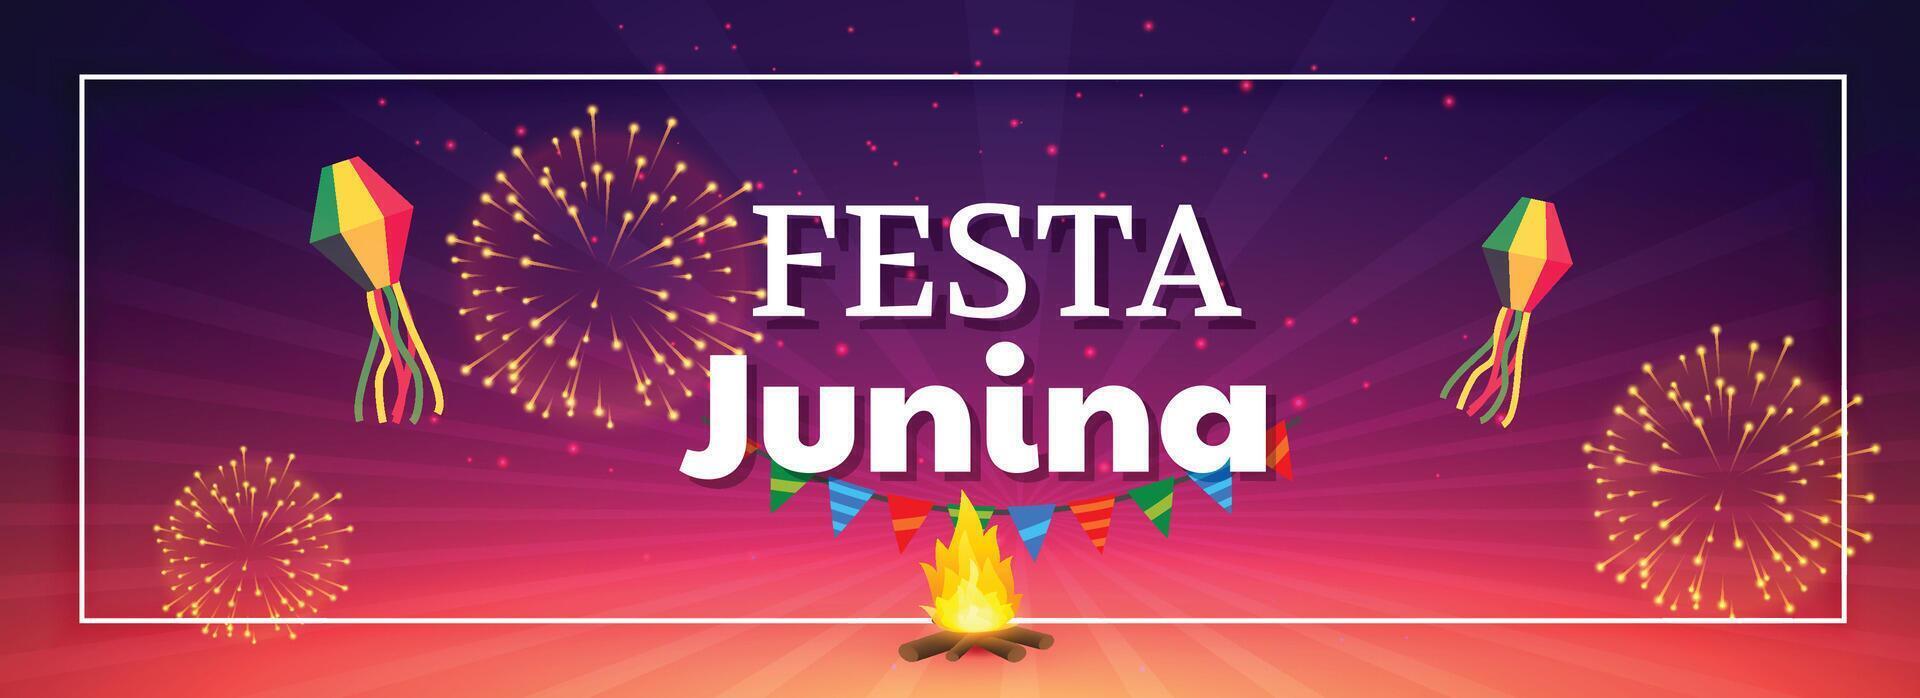 festa junina celebracion fuegos artificiales bandera vector